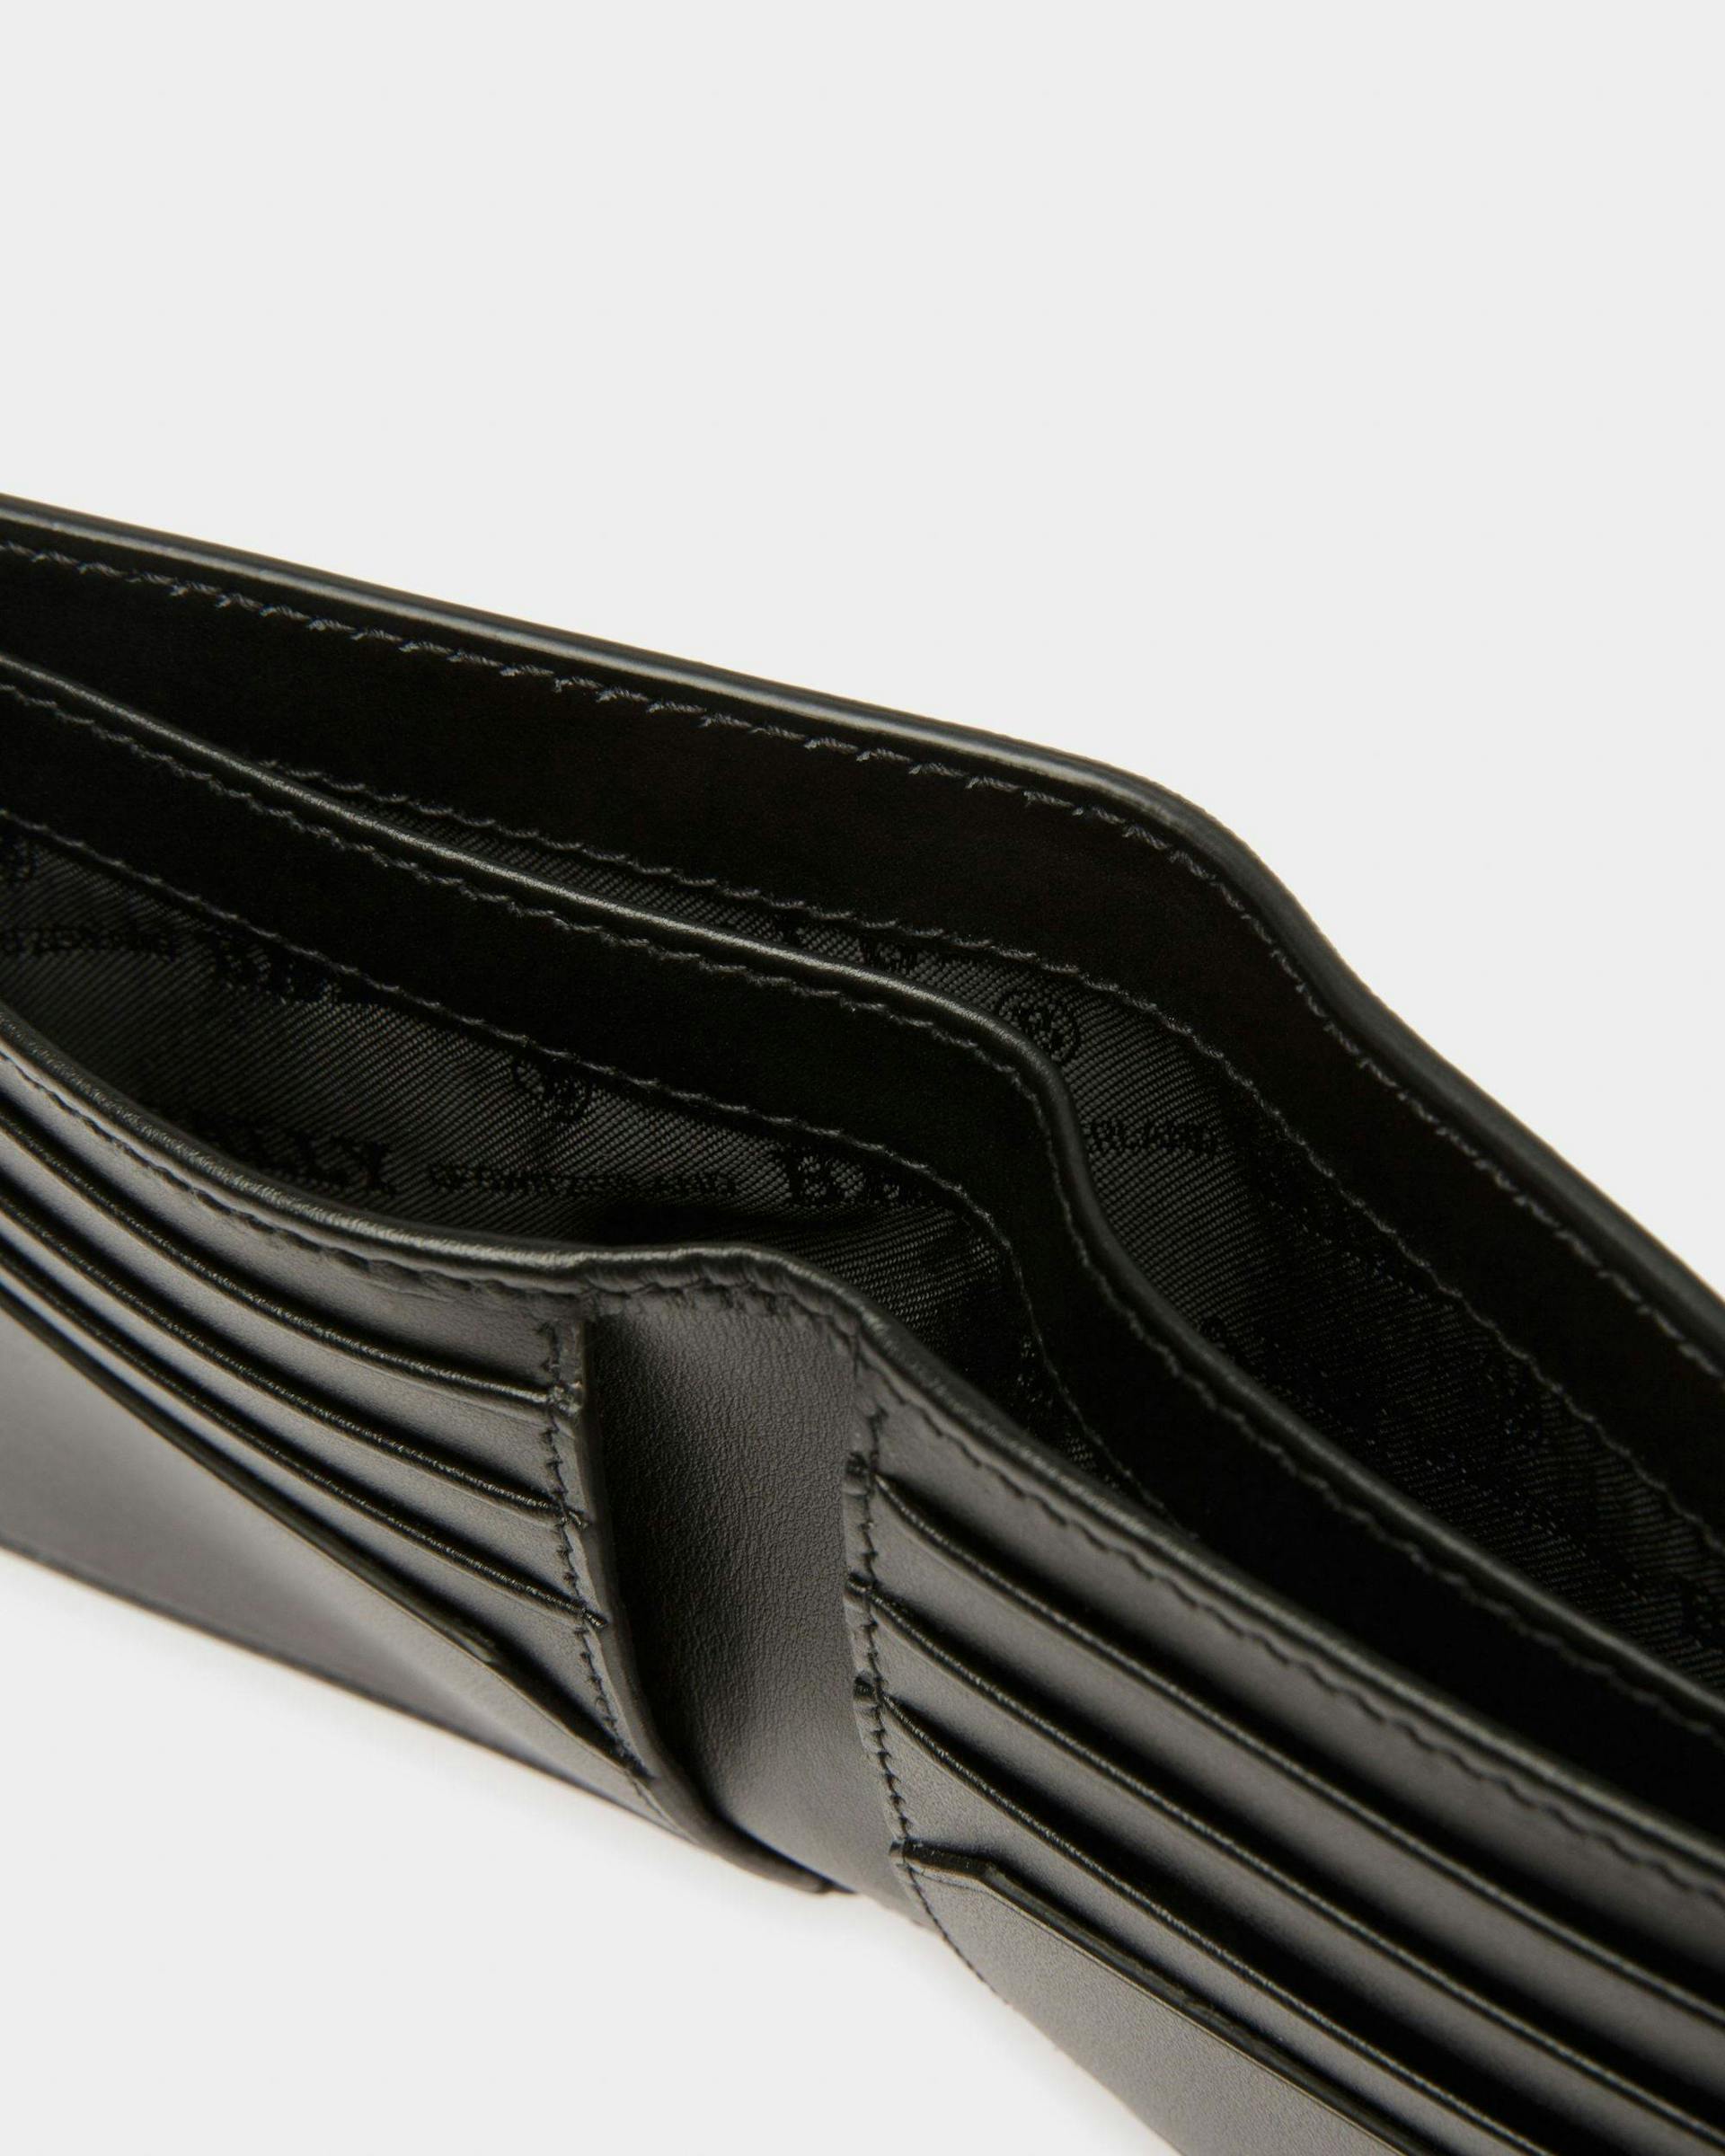 Brasai Leather Wallet In Black & Green - Men's - Bally - 04